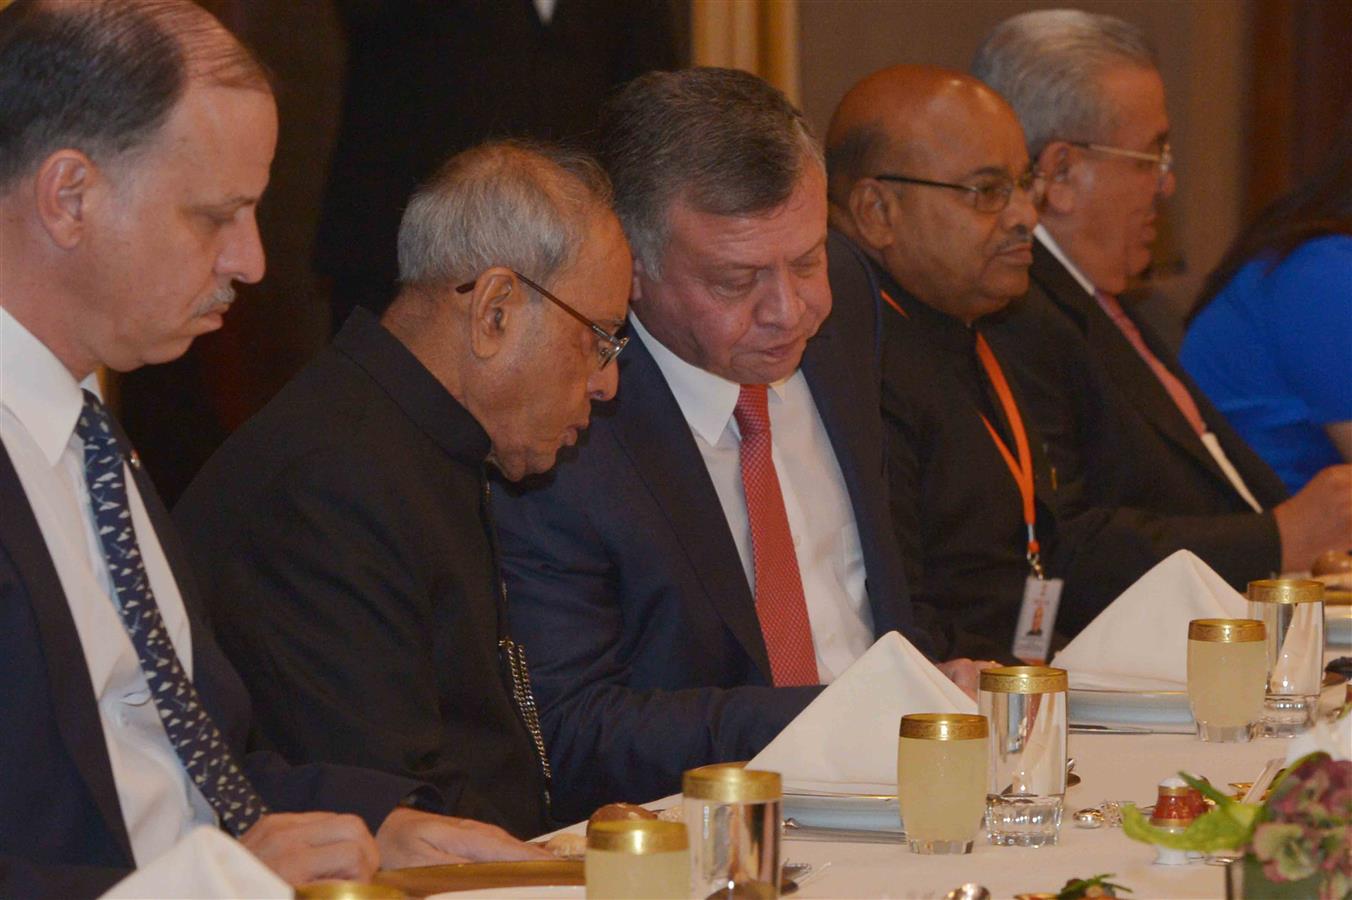 भारत के राष्ट्रपति, श्री प्रणब मुखर्जी 10 अक्तूबर, 2015 को, अम्मान, जॉर्डन के अल हुसैनिया पैलेस में जॉर्डन के महामहिम किंग अब्दुल्ला द्वारा आयोजित मध्याह्न भोज के दौरान